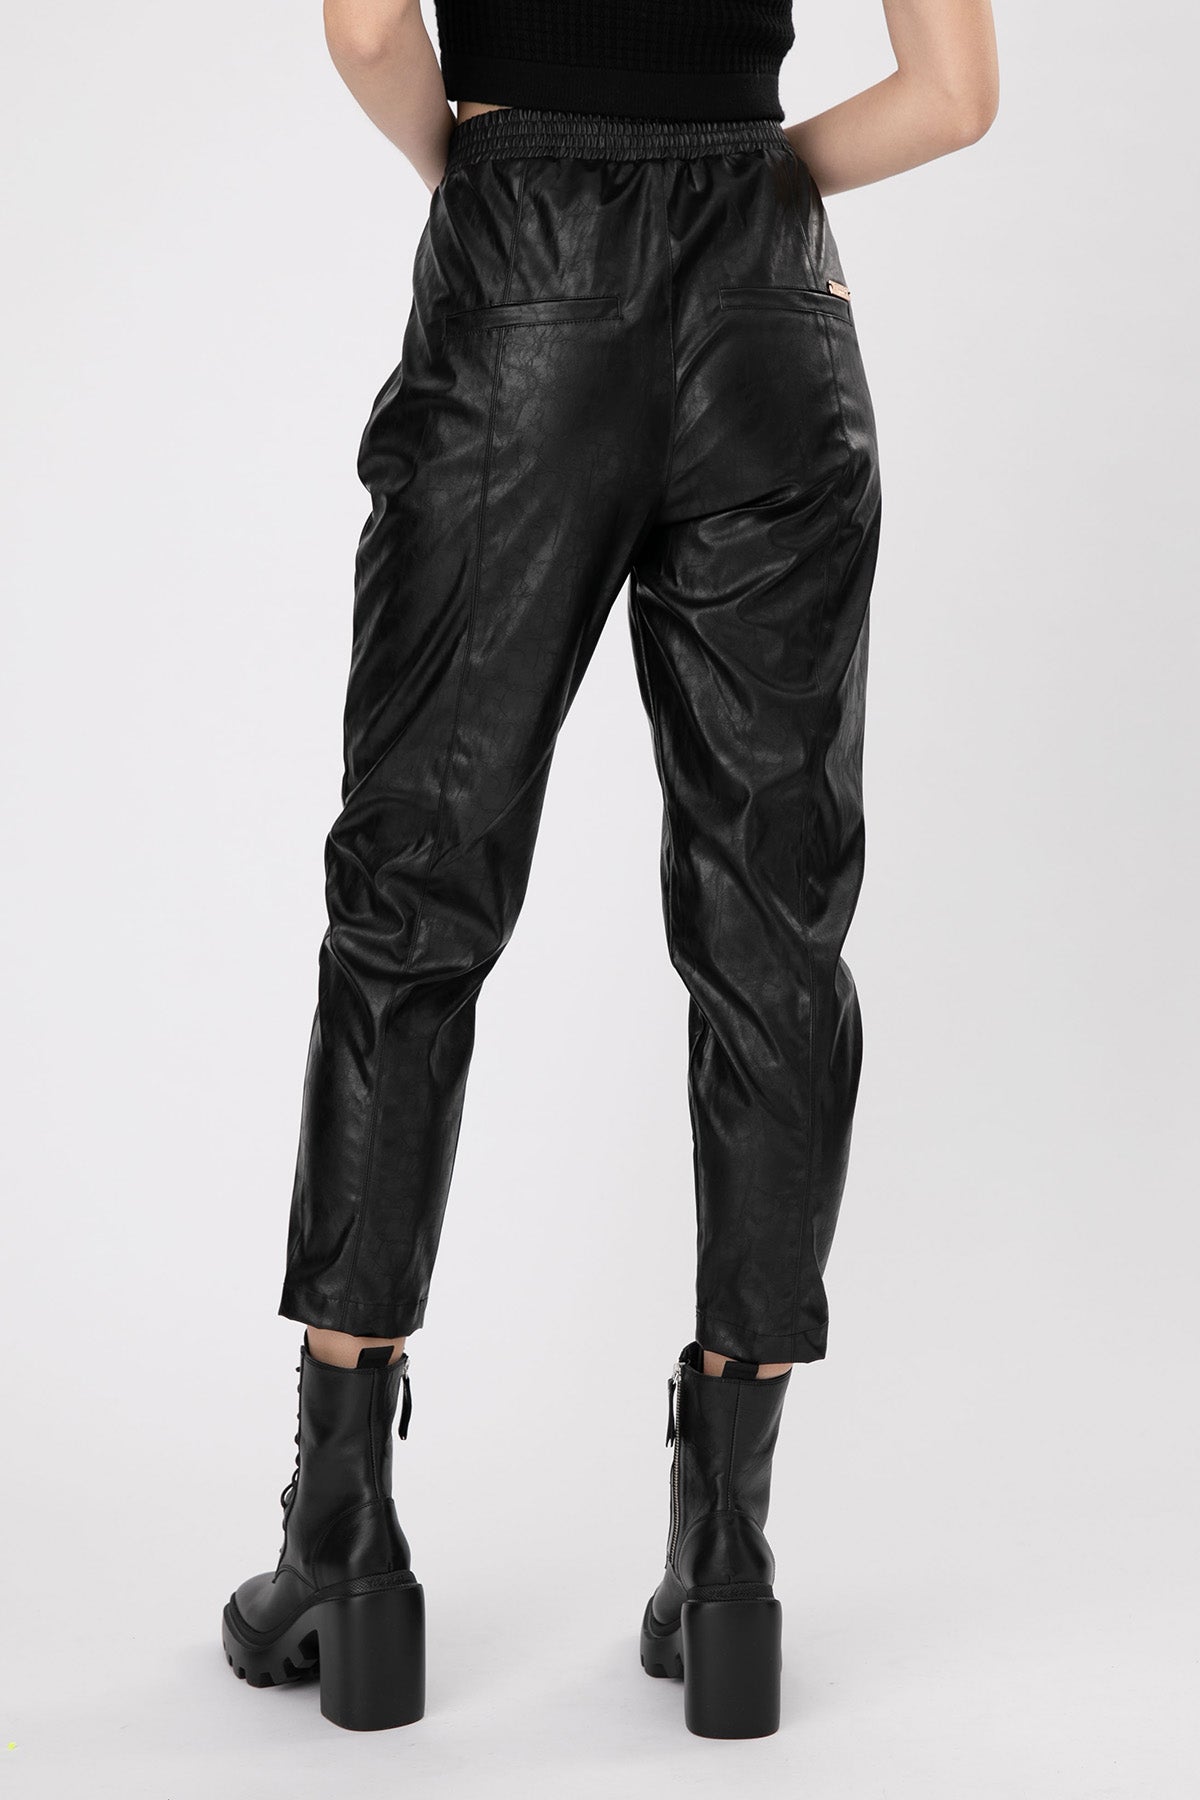 Lynne Beli Lastikli Deri Pantolon-Libas Trendy Fashion Store